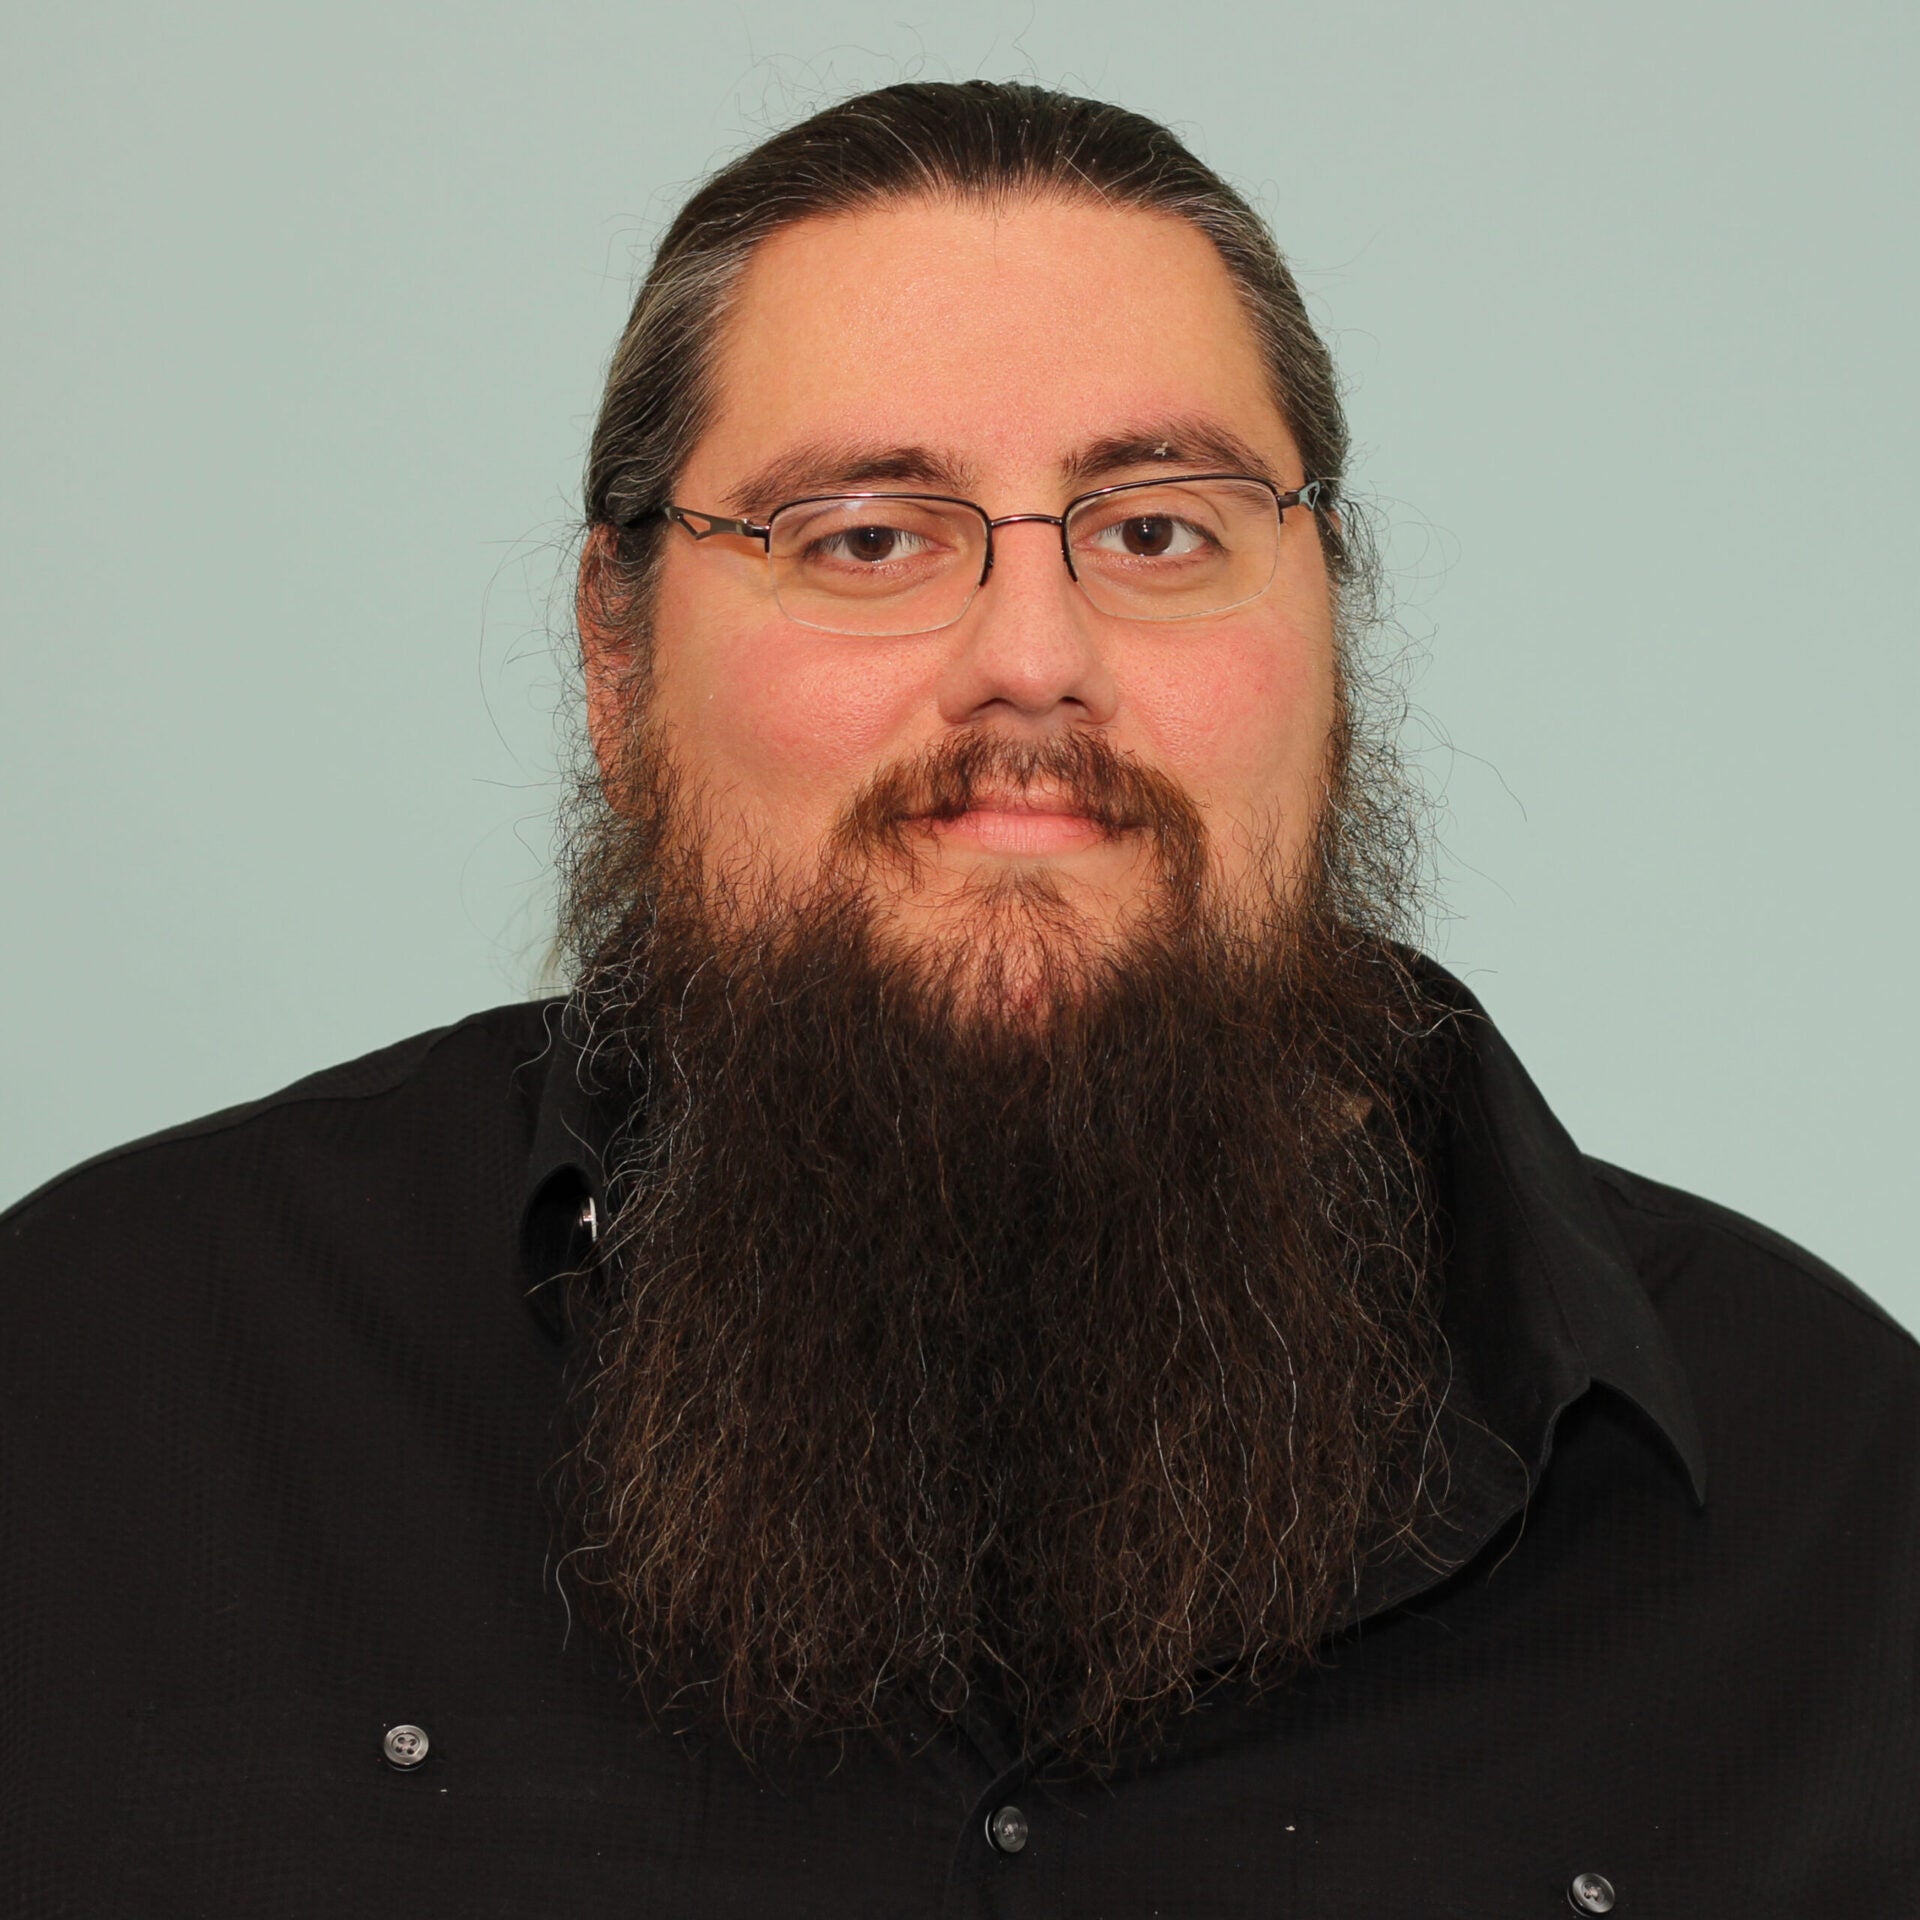 Headshot of Anthony Mendez, senior software engineer at Parasoft